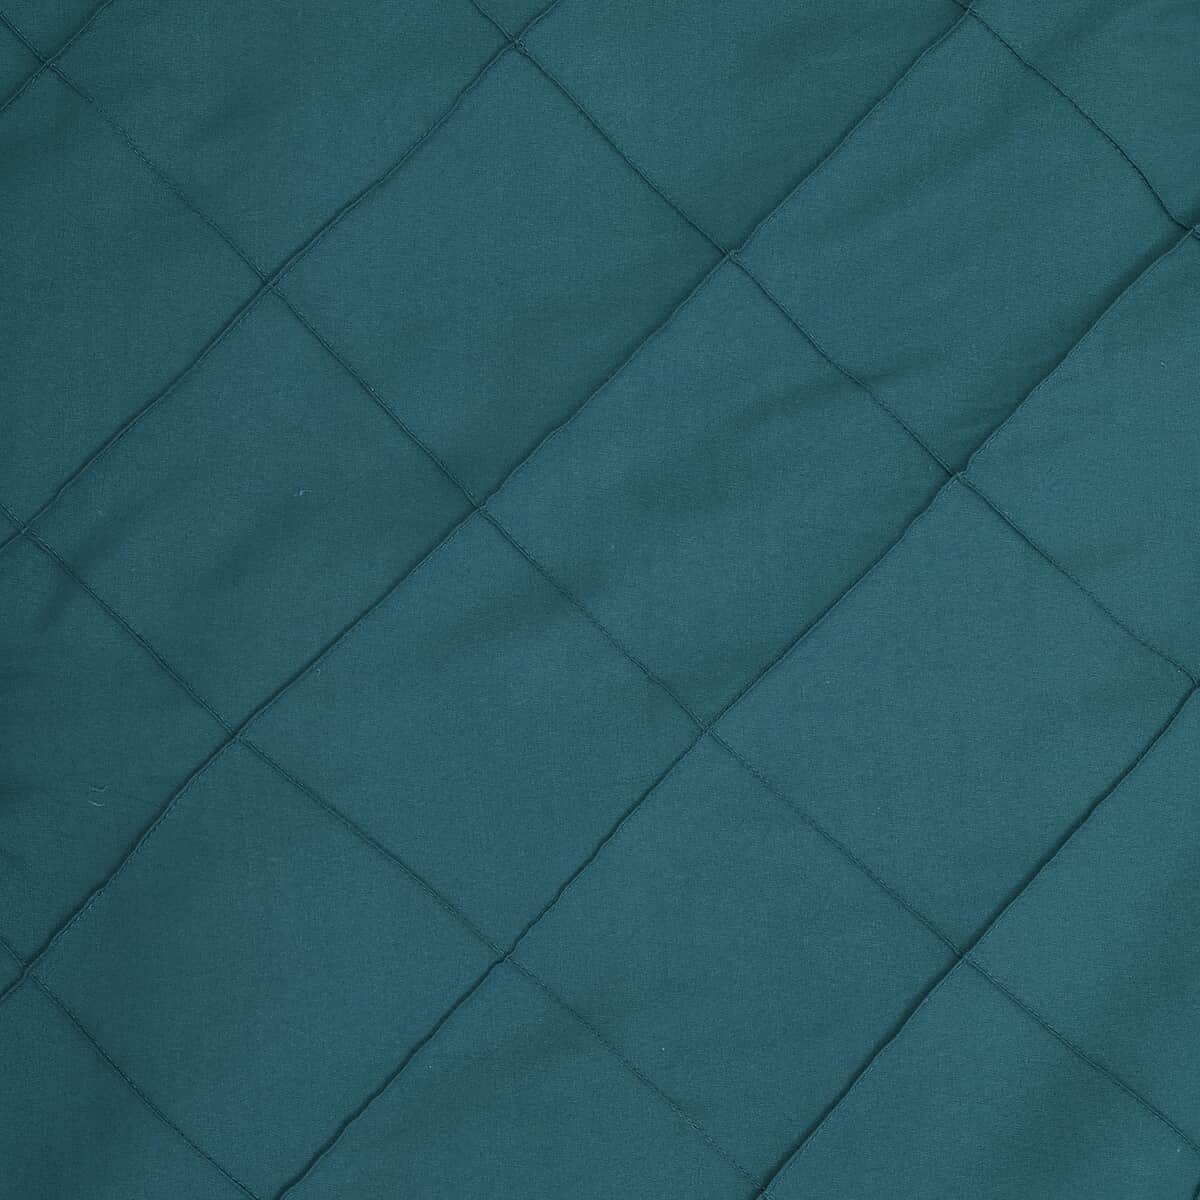 Homesmart Teal Solid Microfiber Quilt and Set of 2 Shams - King image number 4